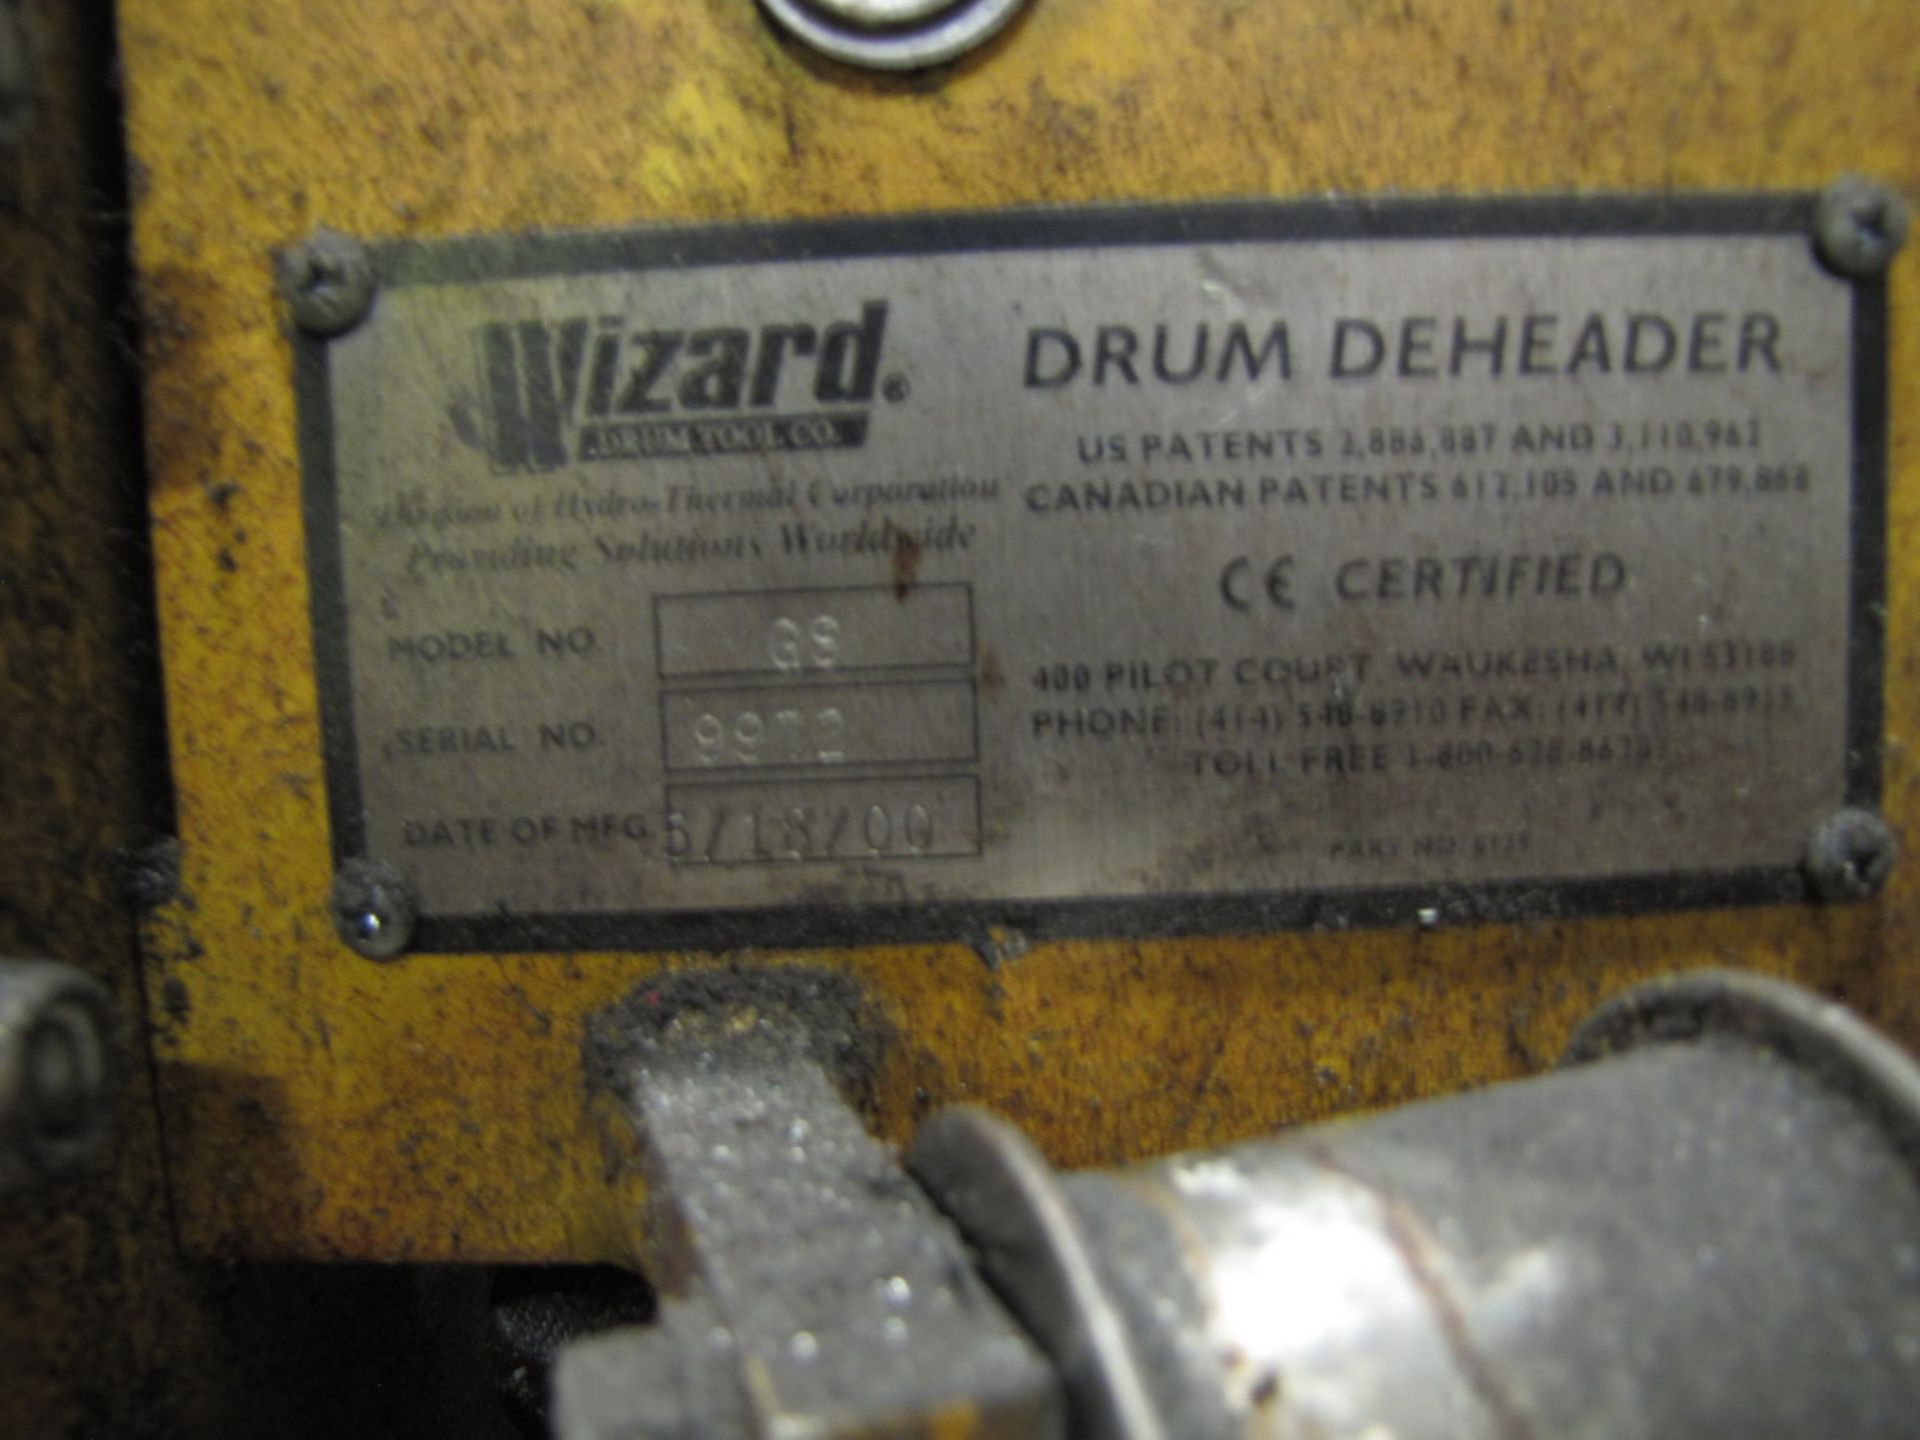 Wizard Model GS Drum Deheader (S/N: 9972) (2000) (Plant #1) - Image 2 of 2